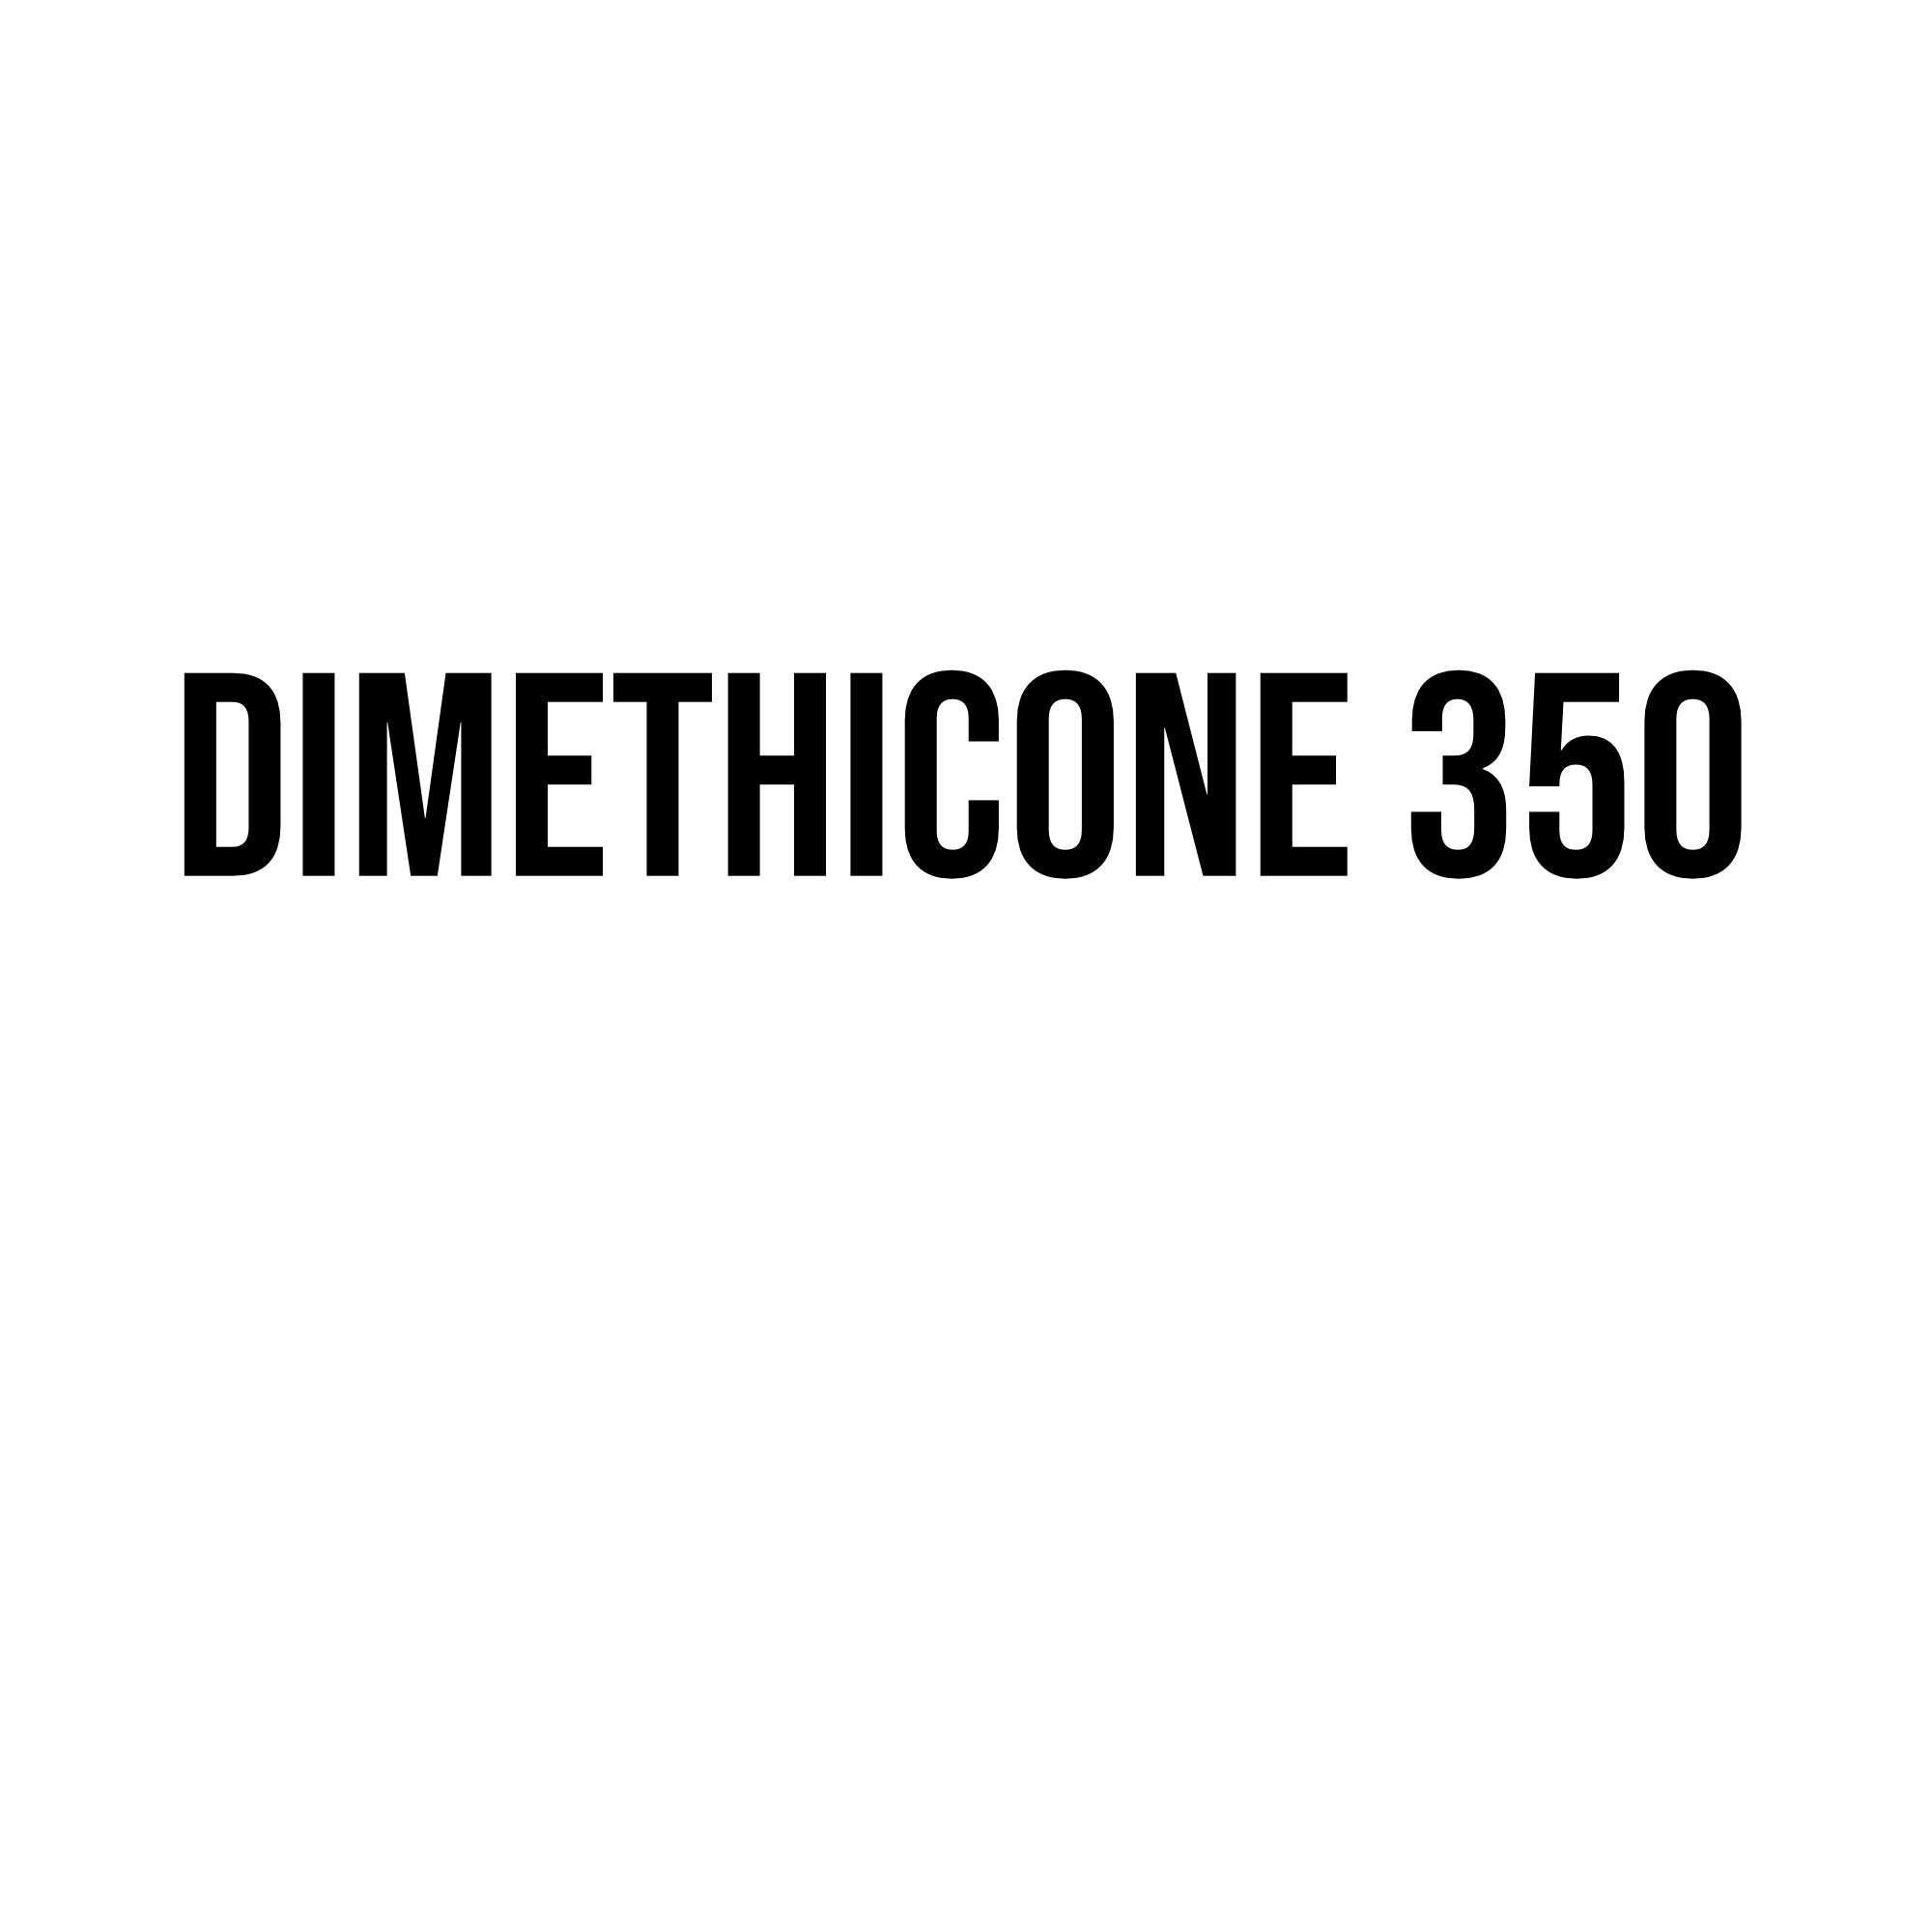 Dimethicone 350